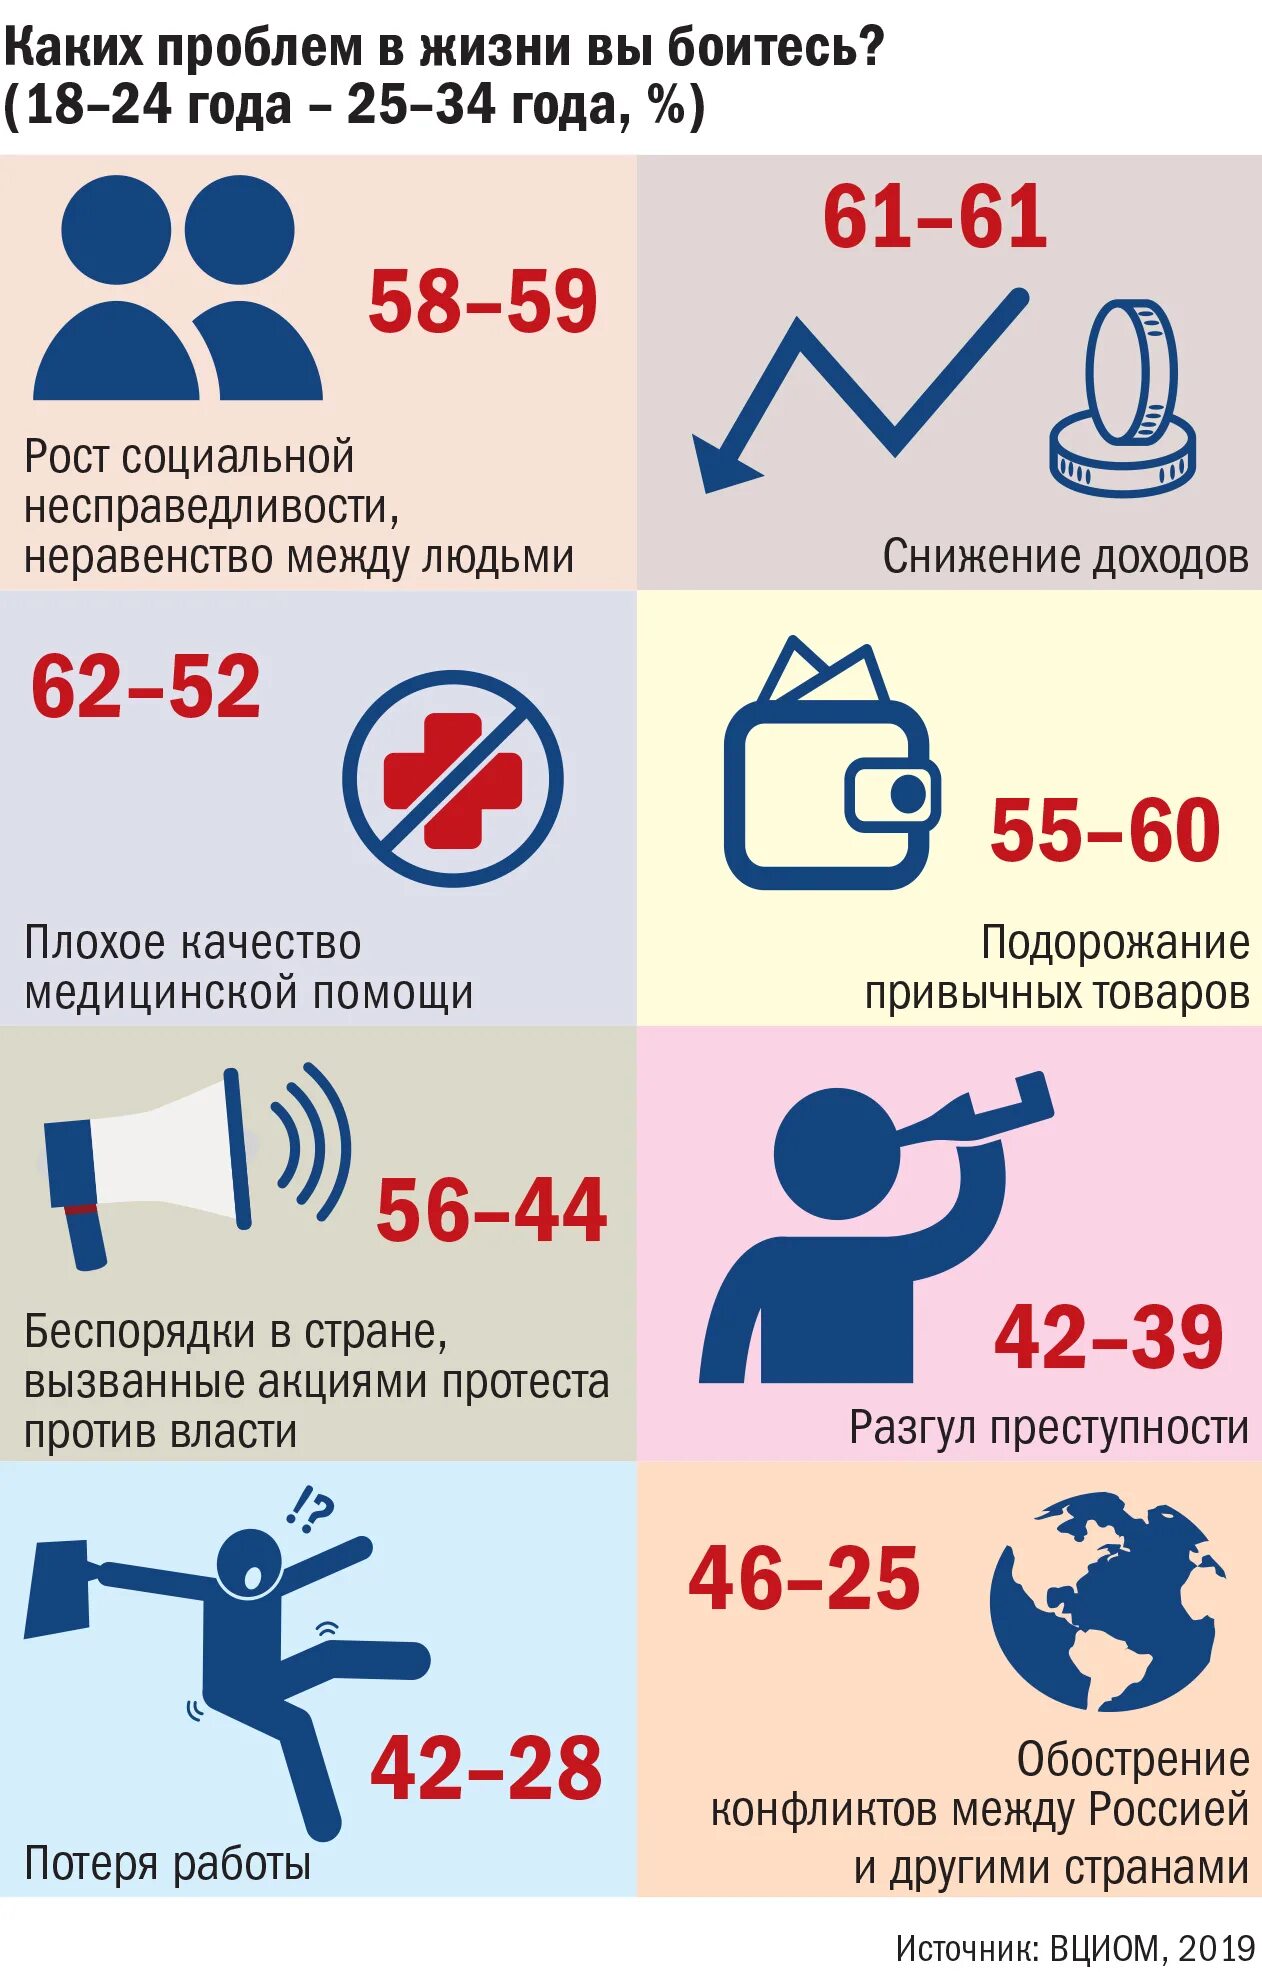 Повышение возраста молодежи. Молодежь Возраст. Молодежь по возрасту. Возраст молодежи в России по закону.